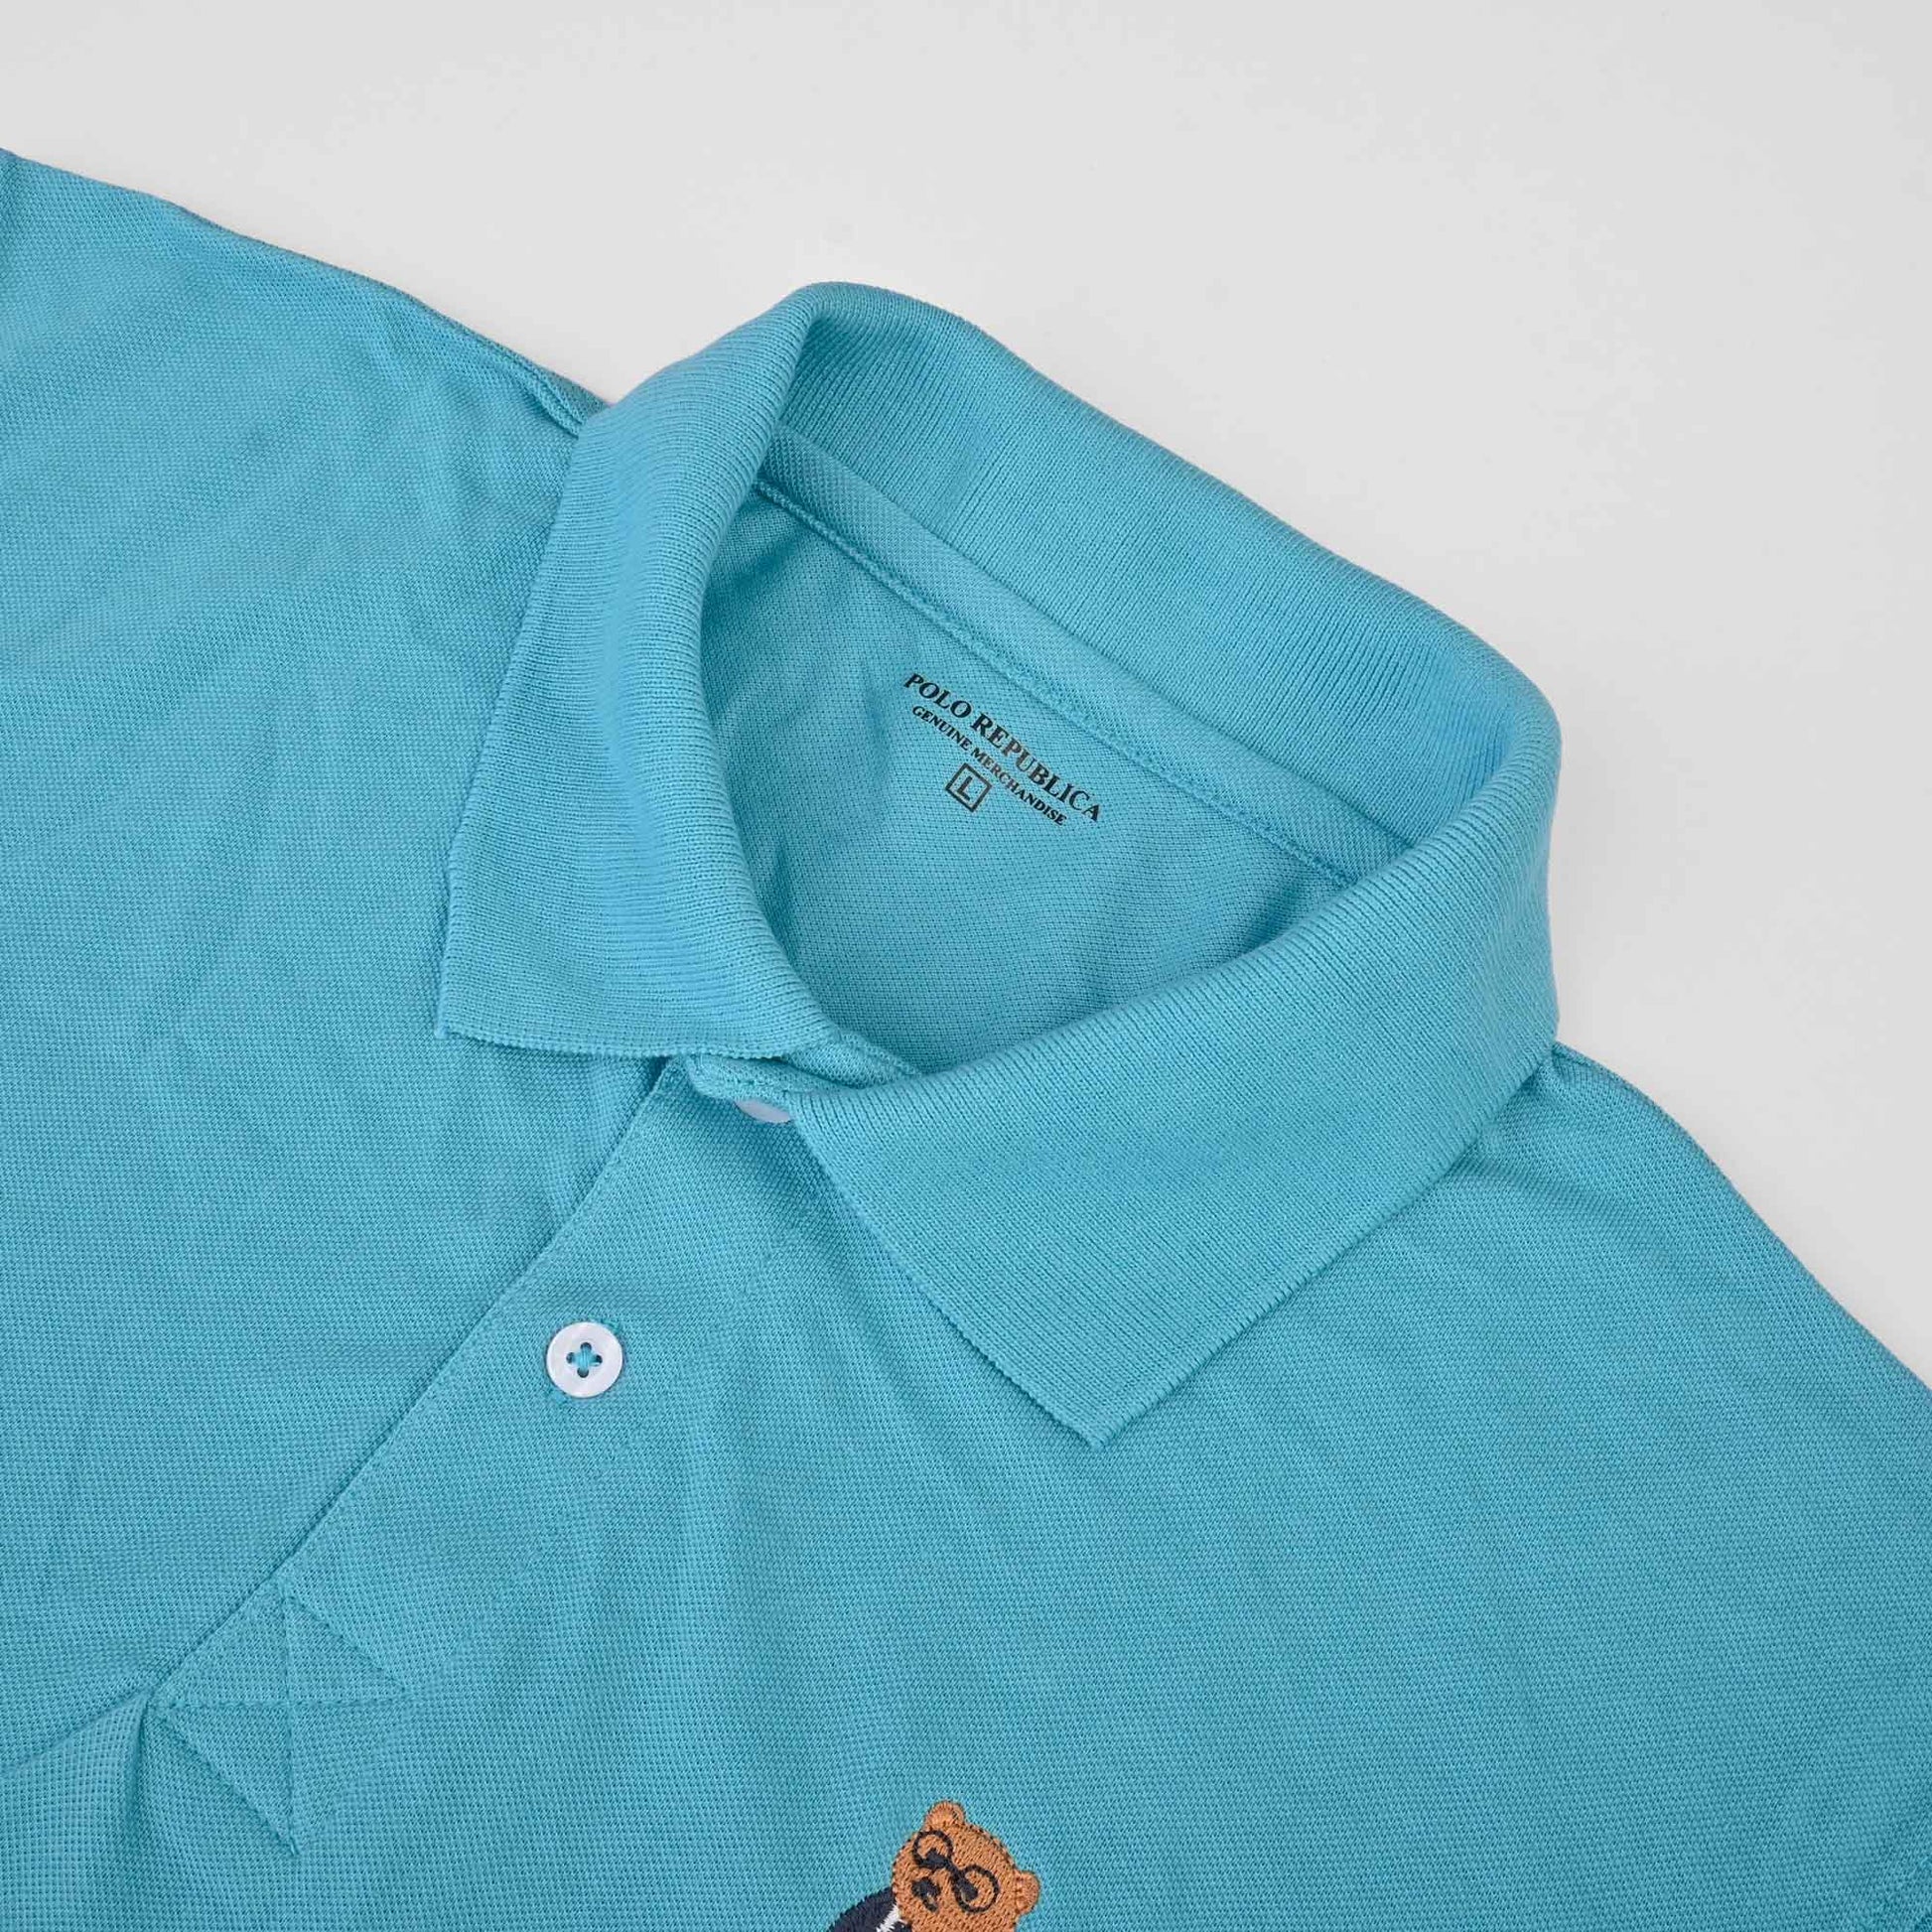 Polo Republica Men's Bear & Polo Embroidered Short Sleeve Polo Shirt